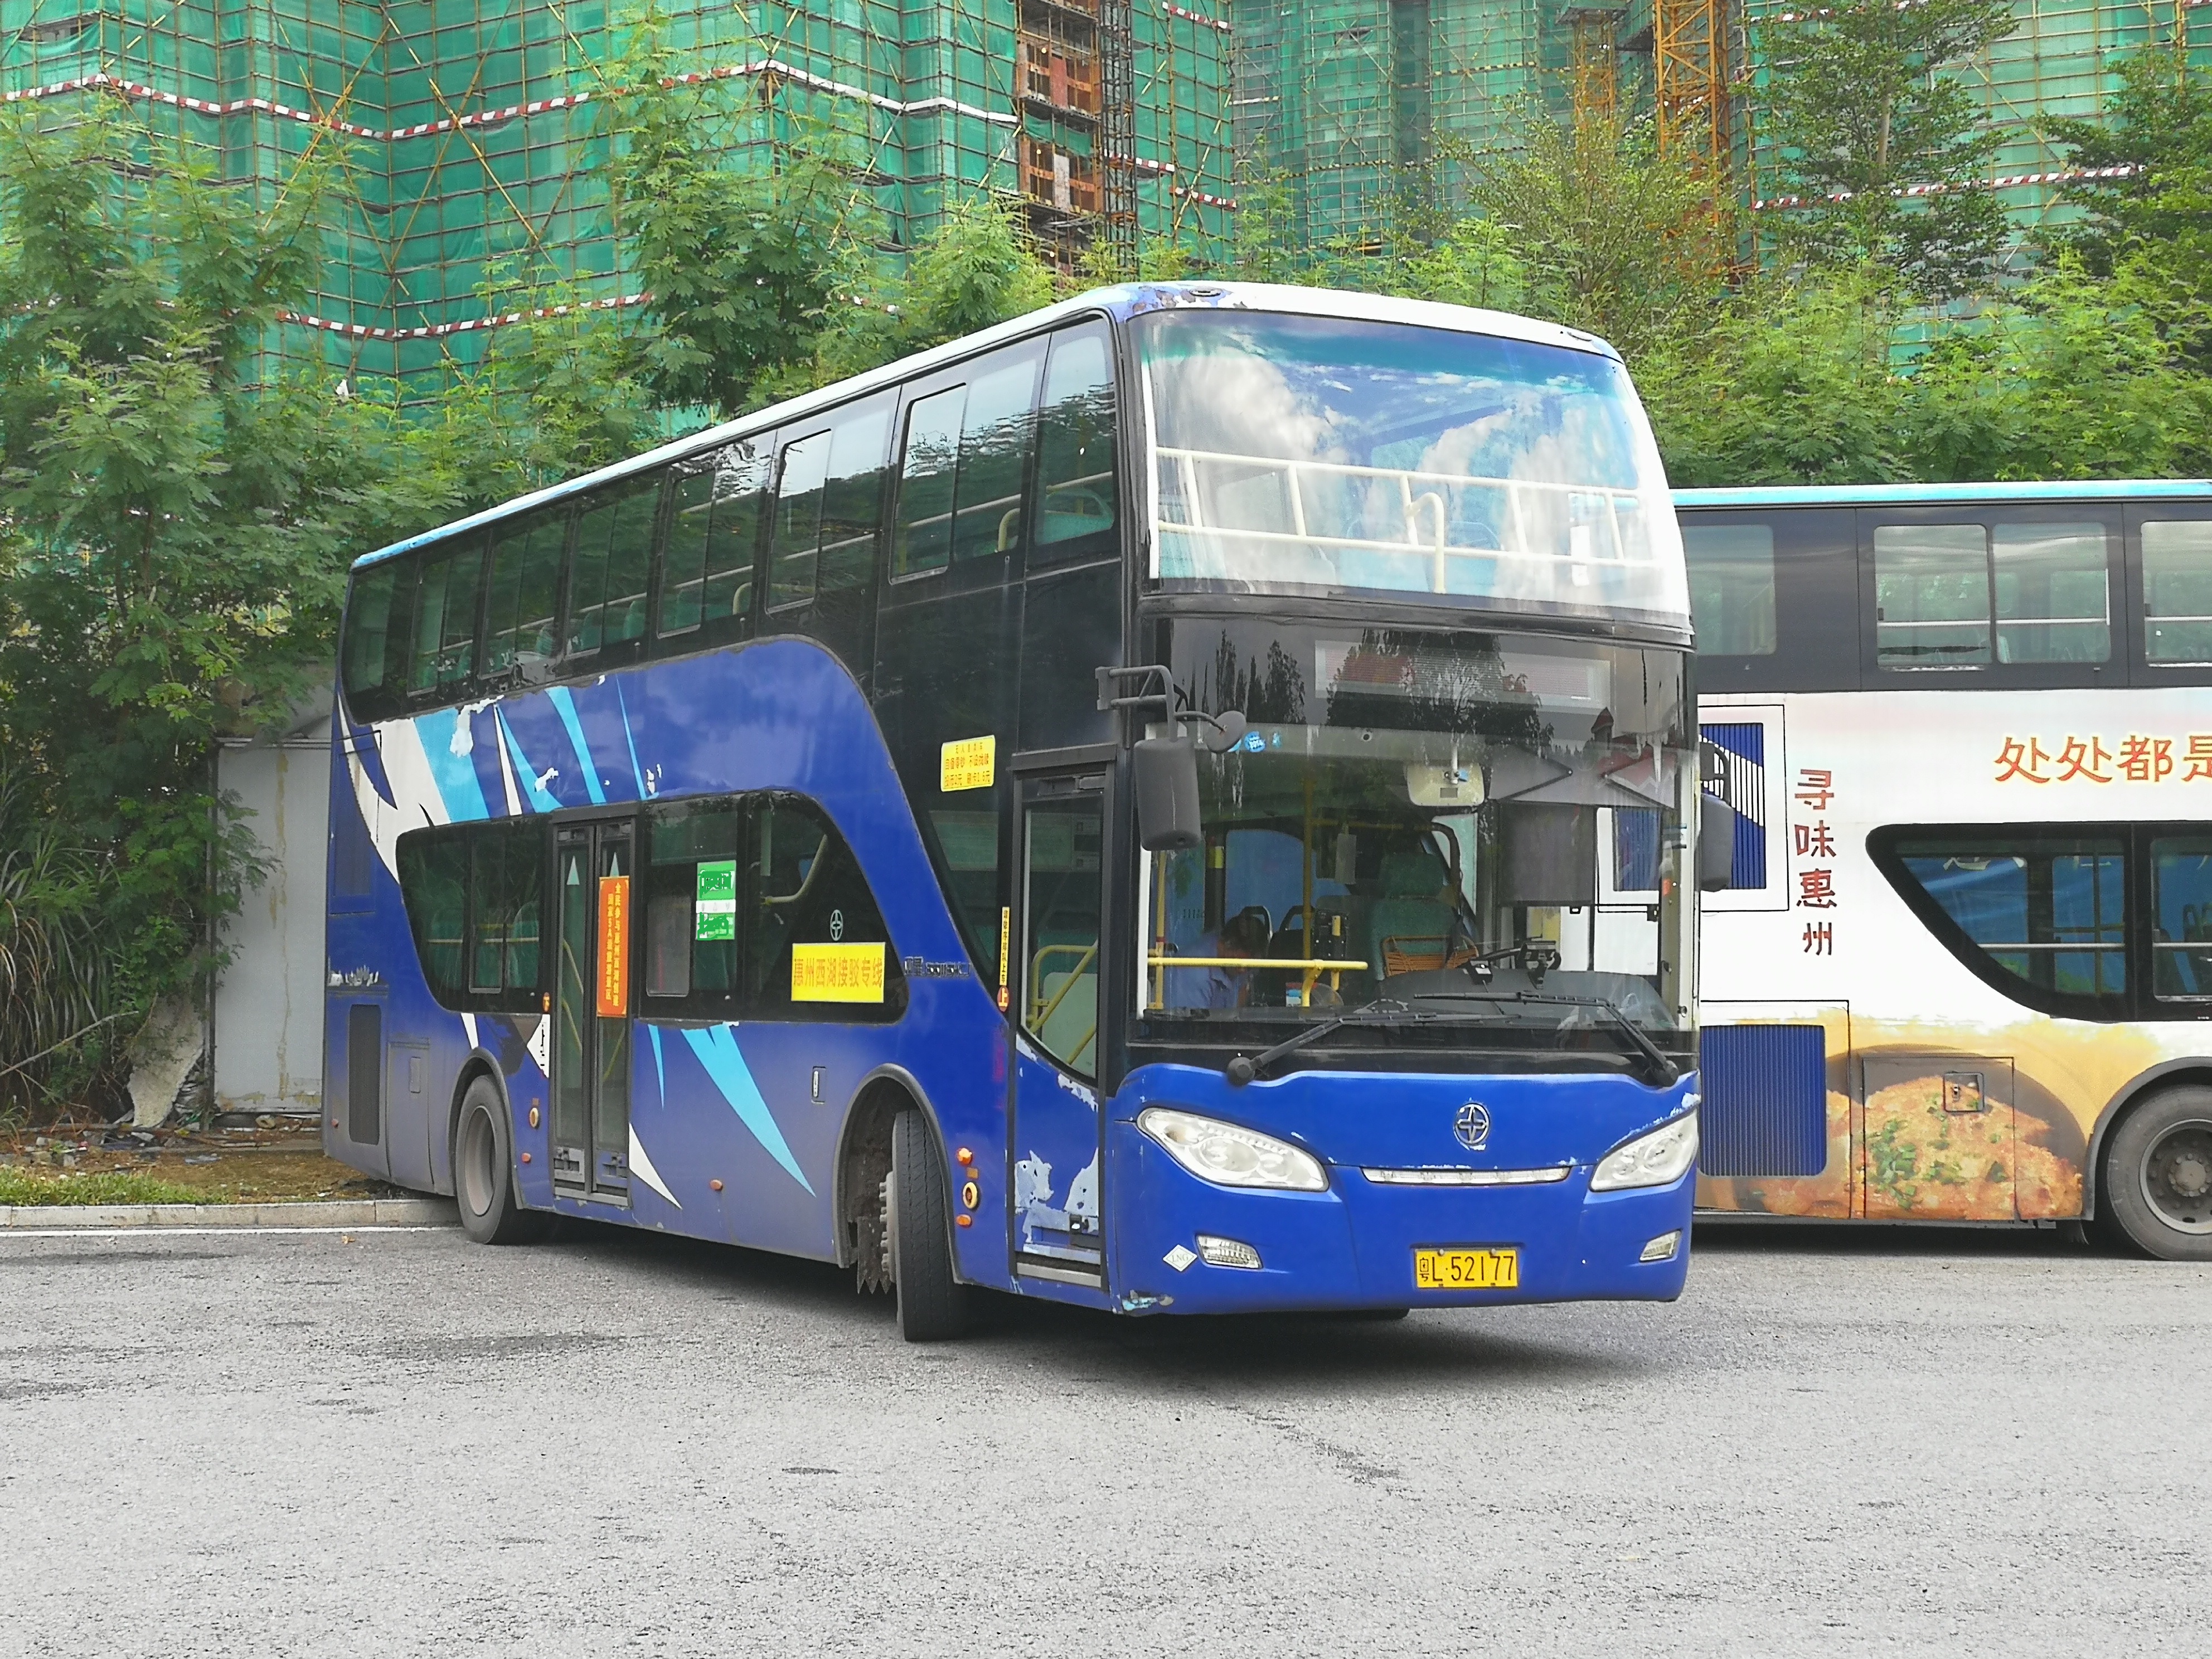 惠州西湖接駁專線採用液化天然氣雙層巴士作為營運車輛